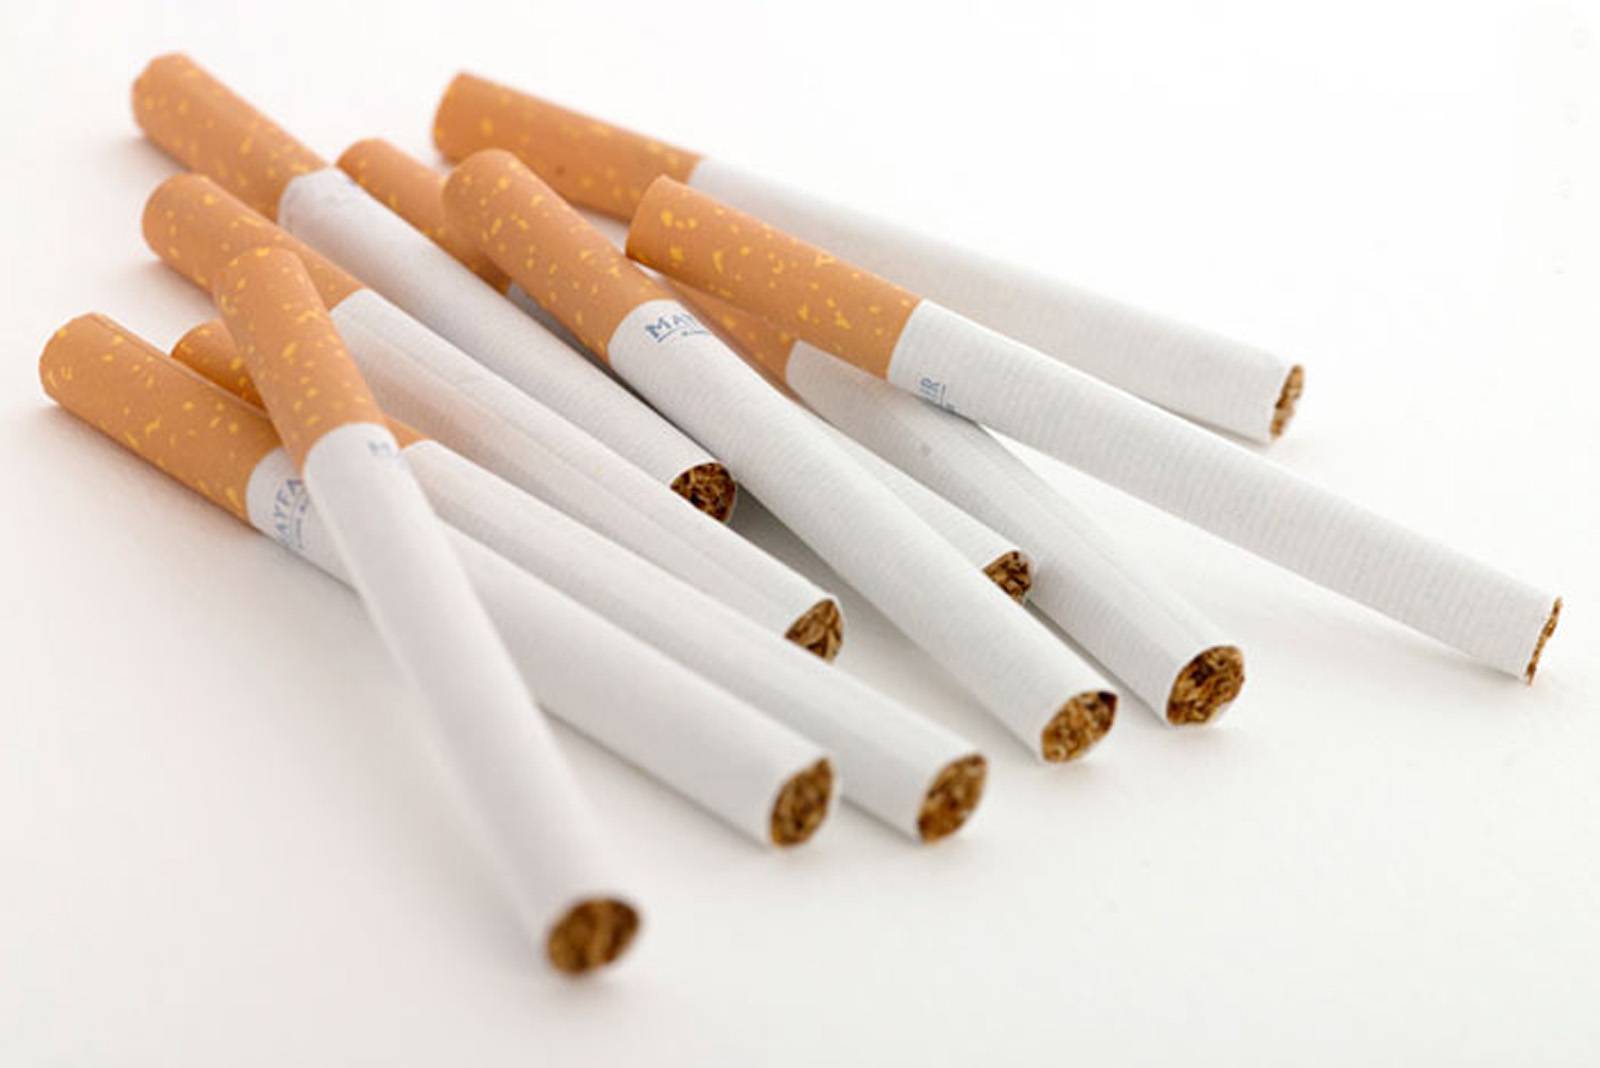 یک میلیون و 20 هزار نخ سیگار قاچاق در کرج کشف شد/ رصد و برخورد جدی با قاچاقچیان کالا در البرز